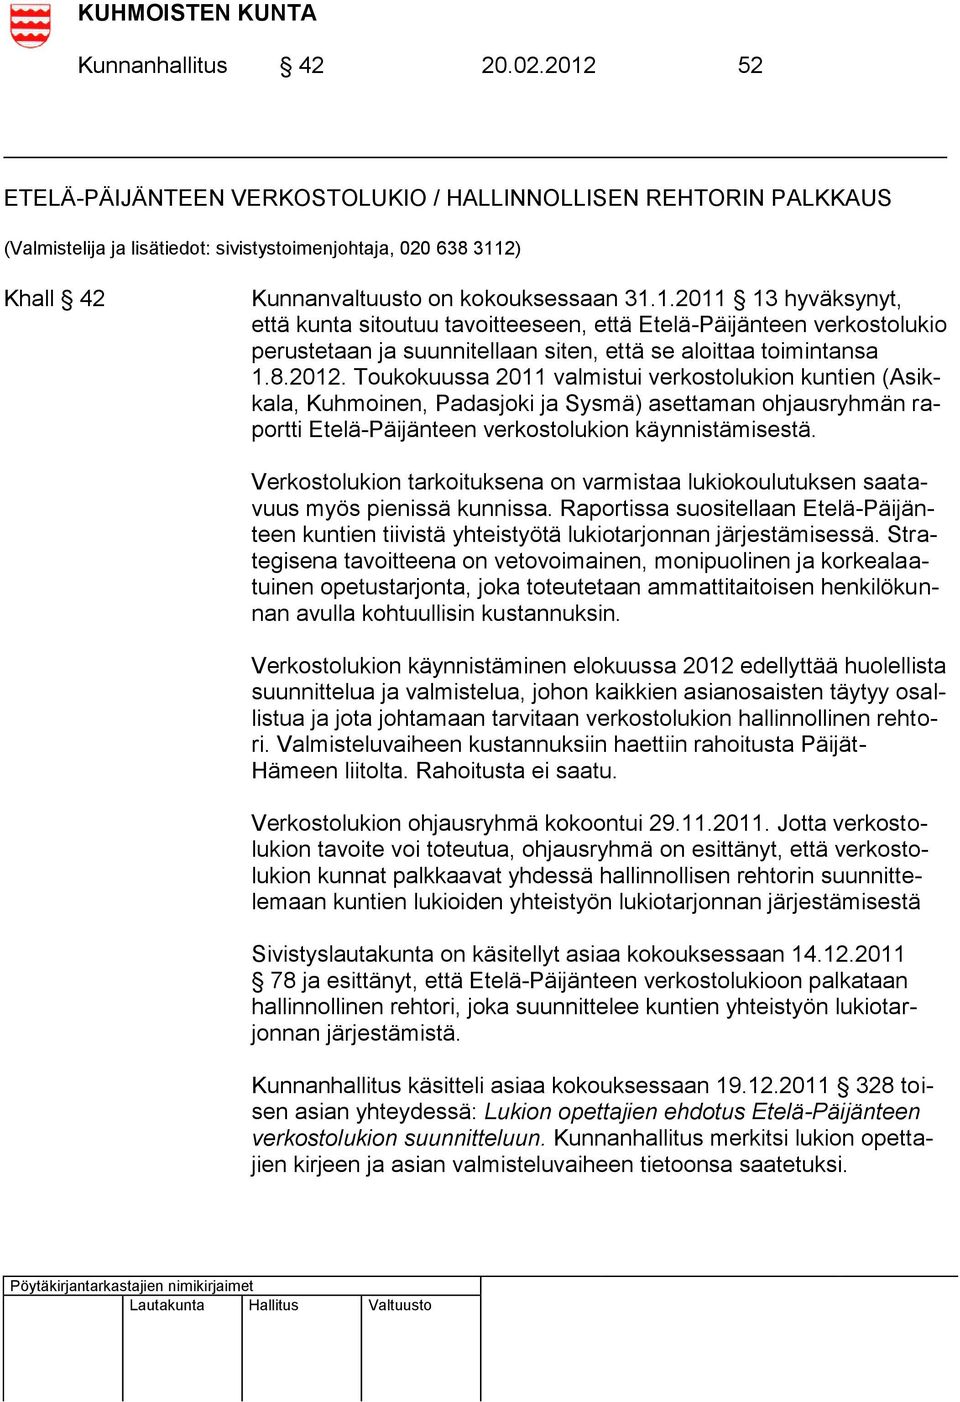 8.2012. Toukokuussa 2011 valmistui verkostolukion kuntien (Asikkala, Kuhmoinen, Padasjoki ja Sysmä) asettaman ohjausryhmän raportti Etelä-Päijänteen verkostolukion käynnistämisestä.